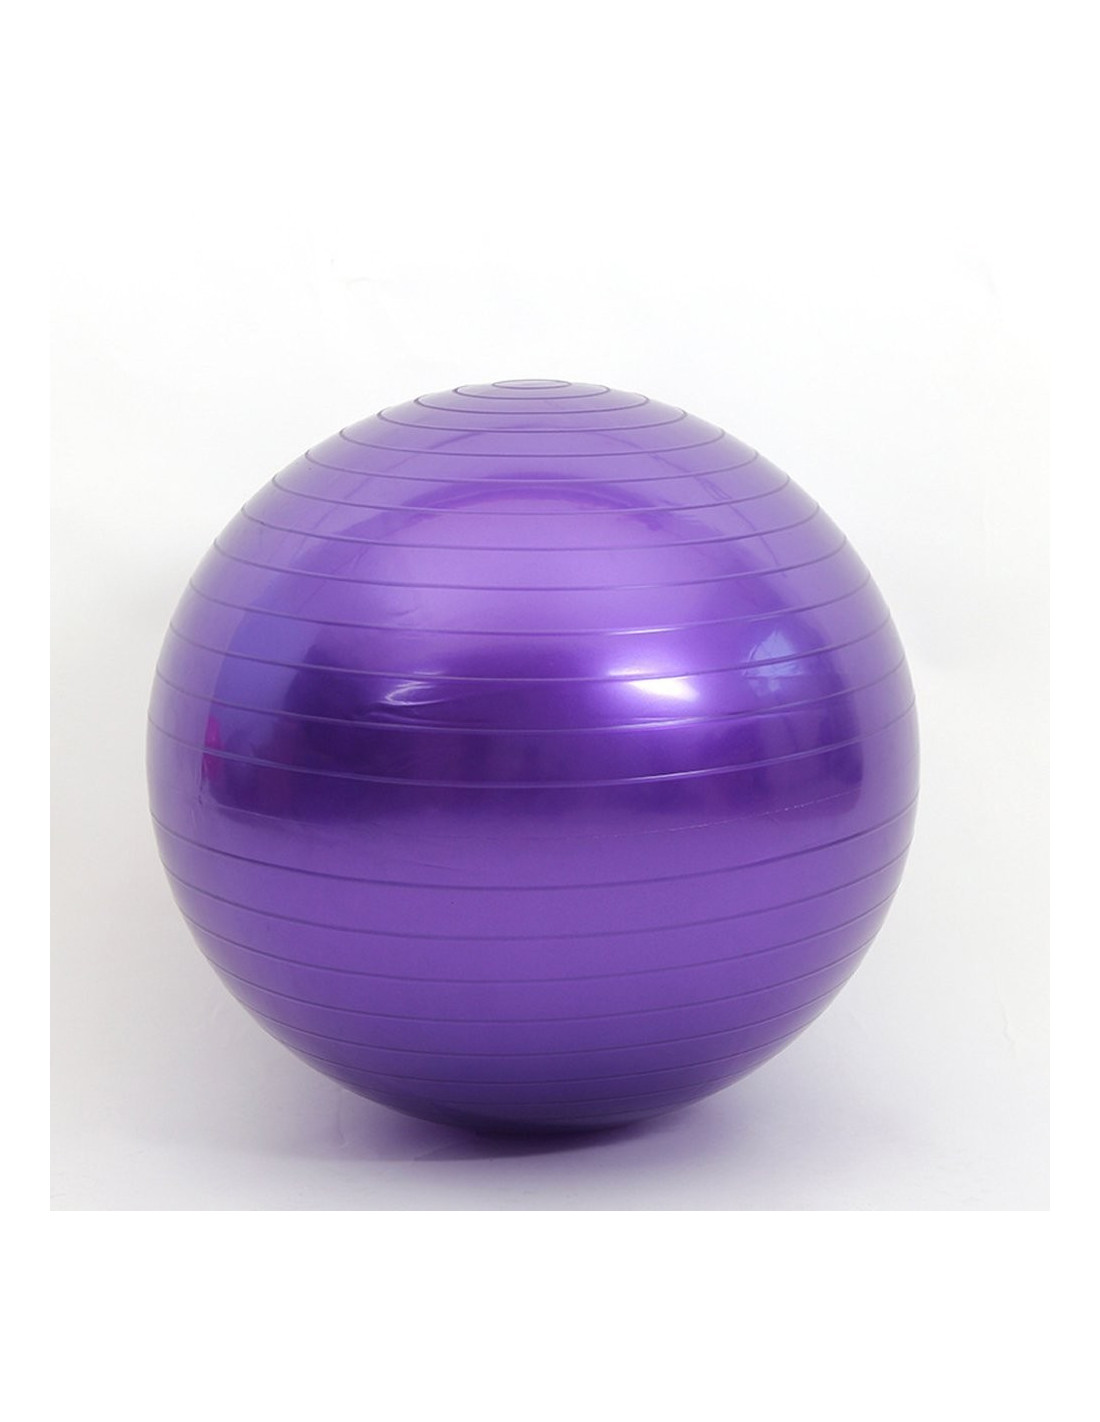 Ballon de Pilates, Antidérapant, Anti-perforation, Gonfleur inclus, Lavable, 58 cm, Bleu, PY-01